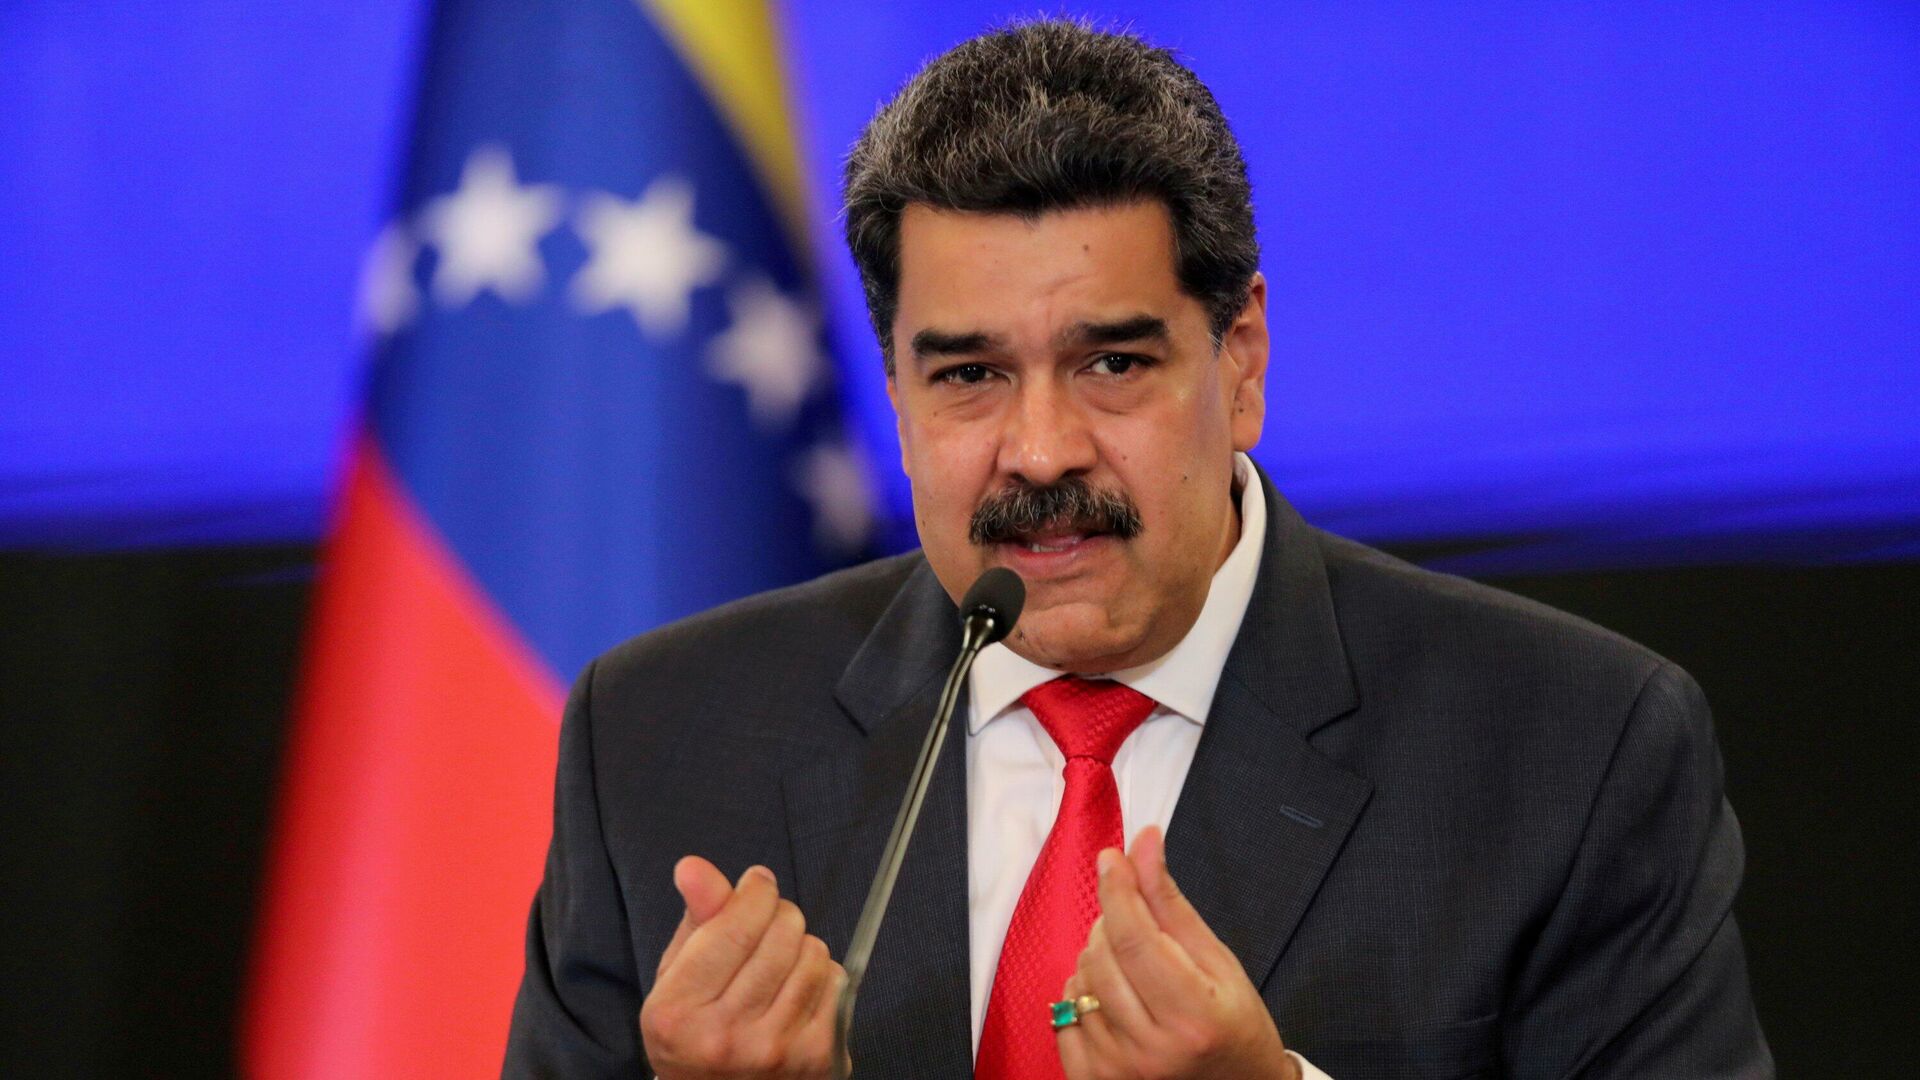 Maduro dan Kur an yakma eylemlerine tepki